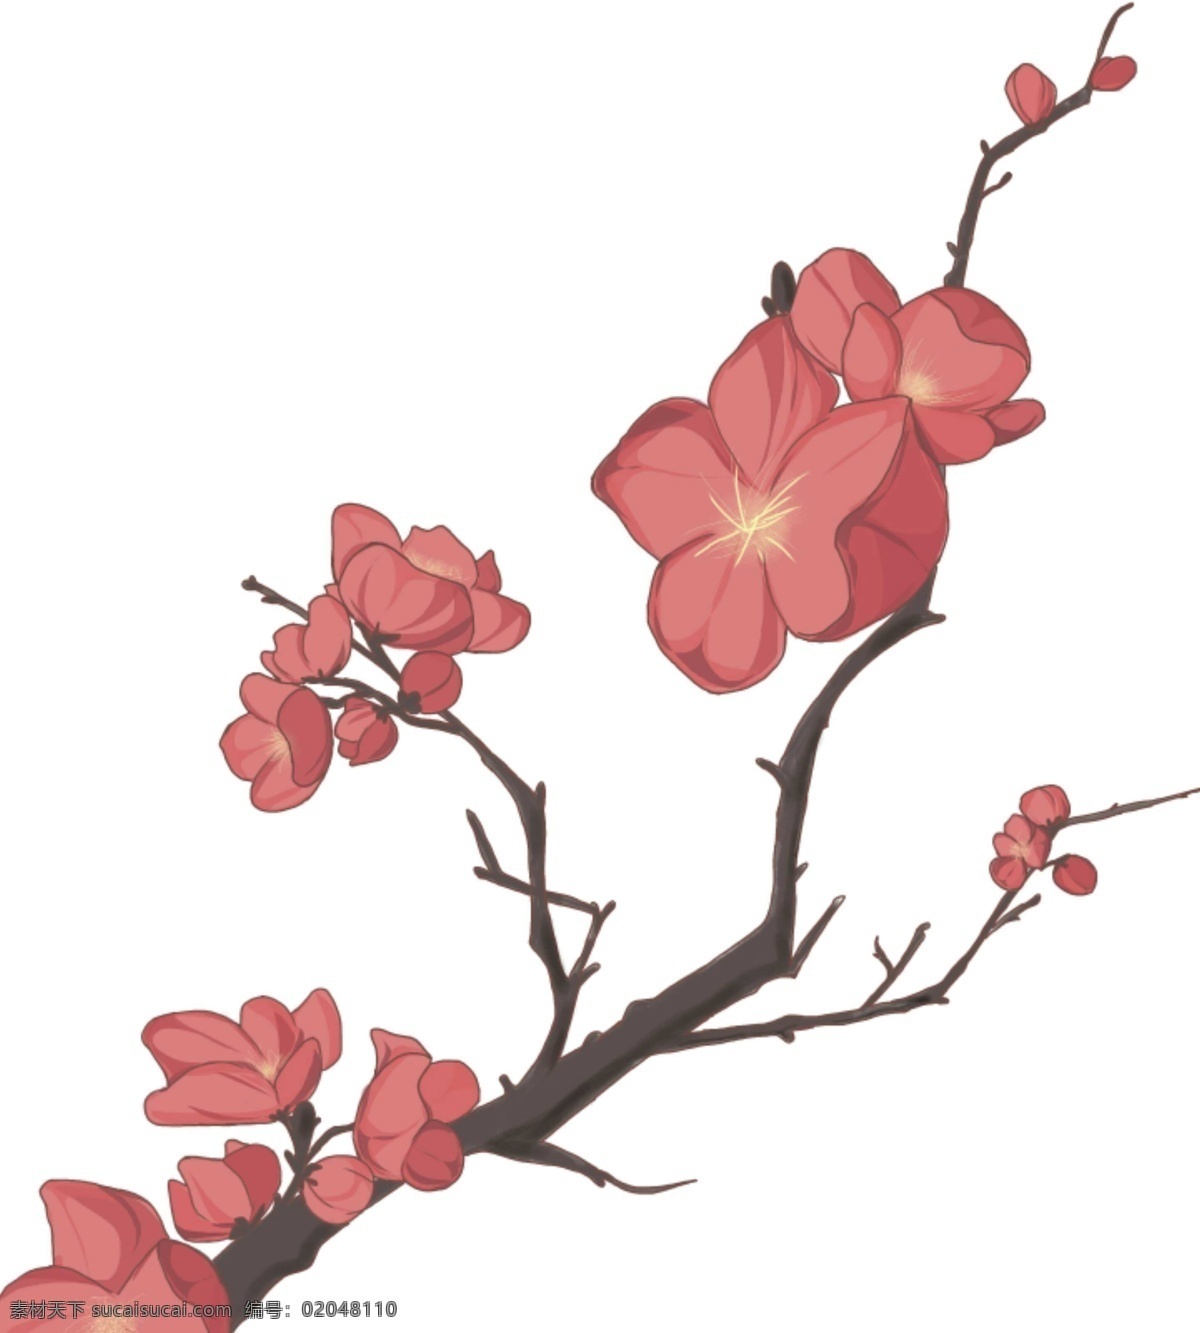 卡通 冬季 植物 红色 花朵 冬季植物 红色花朵 红花 树枝 枝丫 树木 卡通花朵 手绘鲜花 中国风